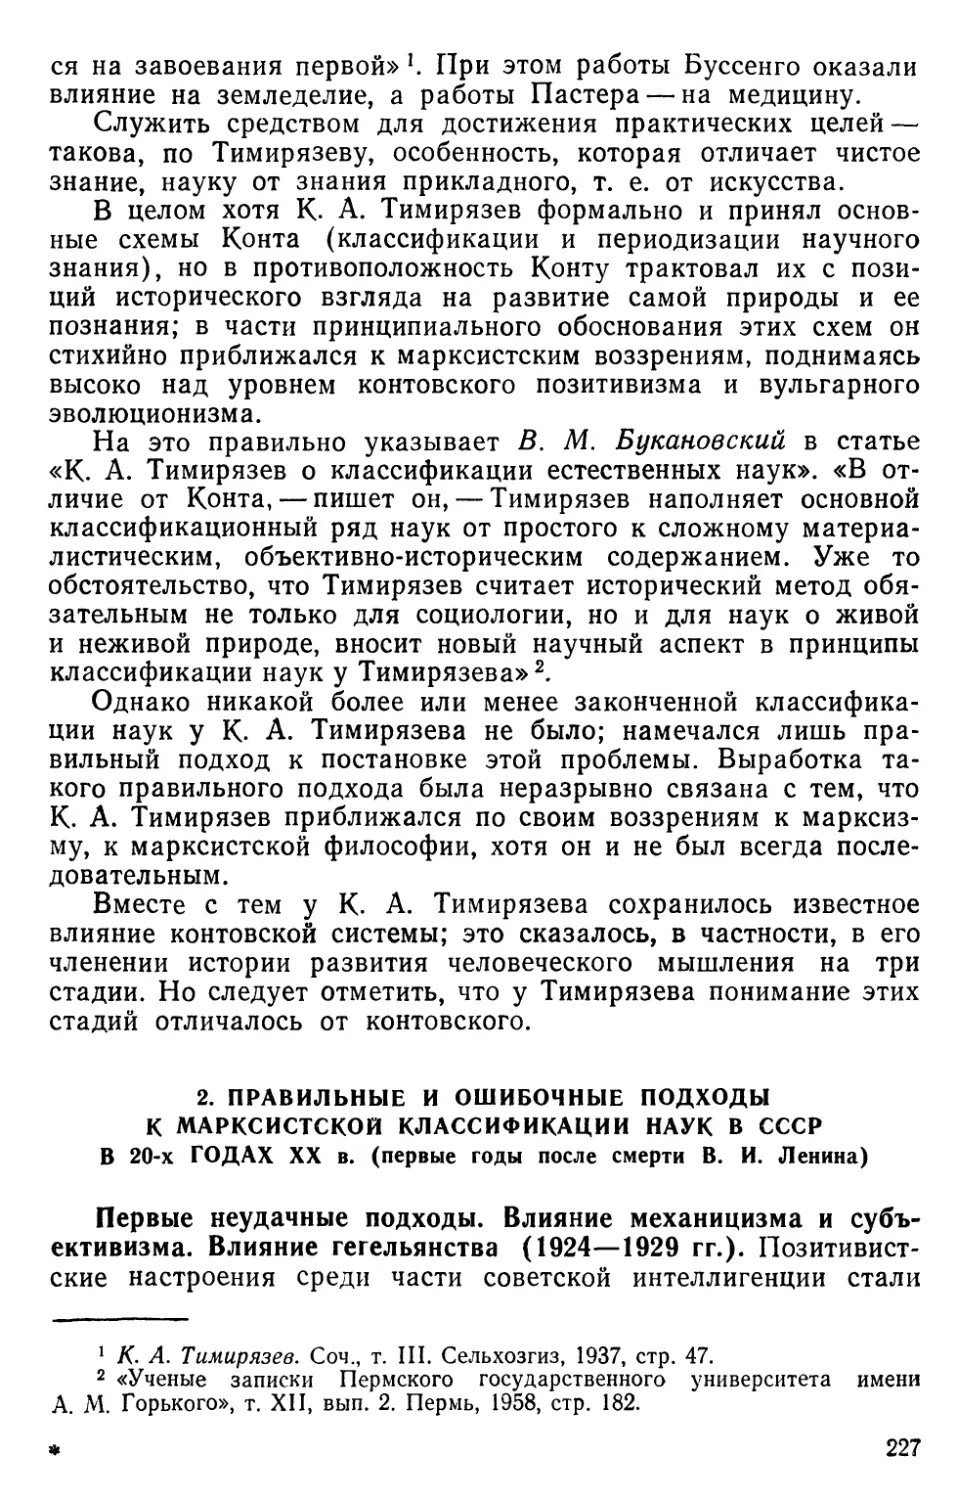 2. Правильные и ошибочные подходы к марксистской классификации наук в СССР в 20-х годах XX в.